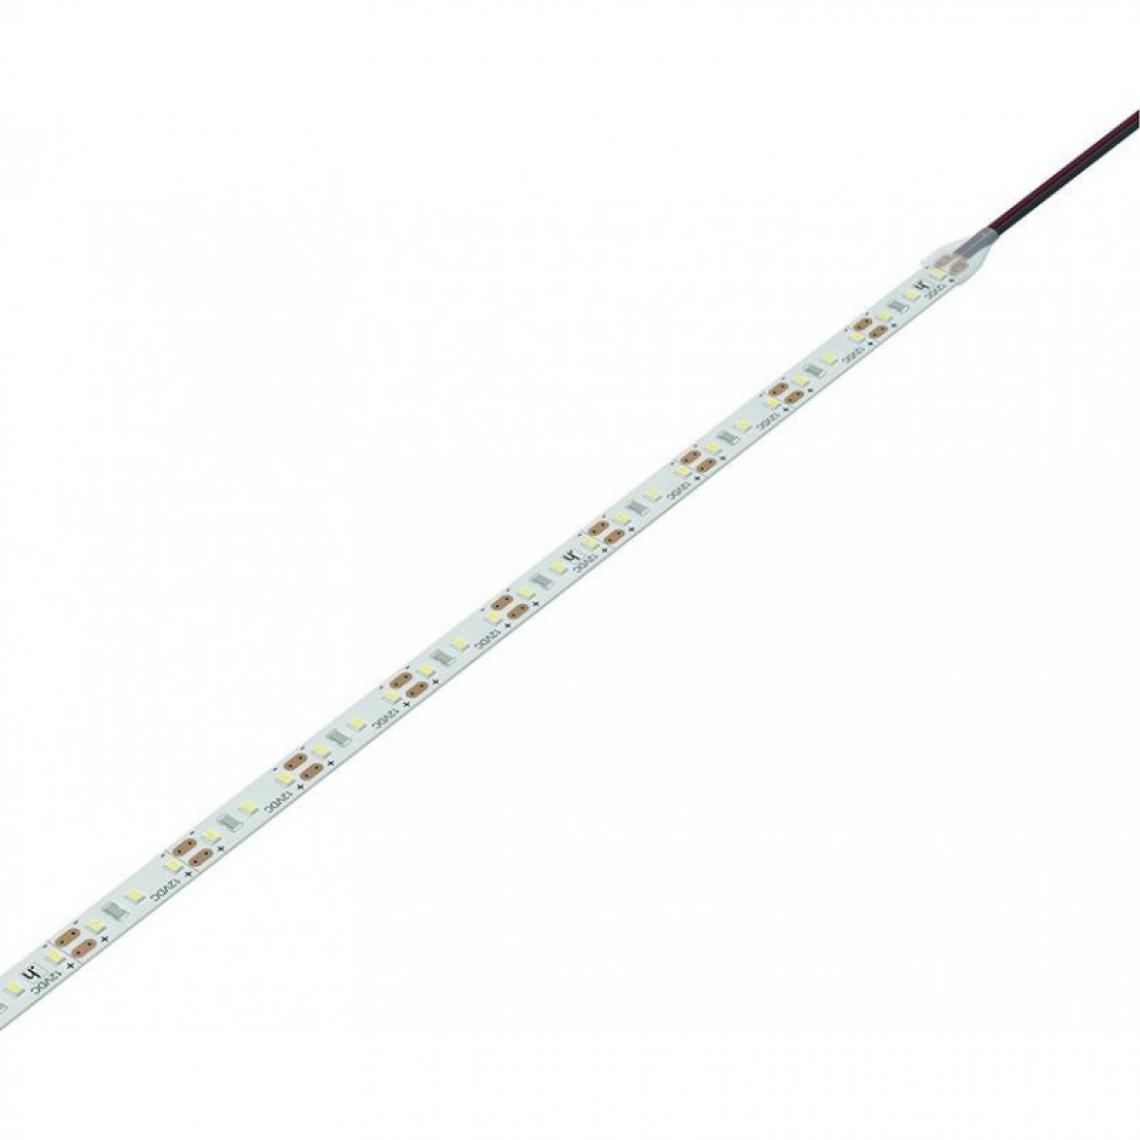 marque generique - Lampe Versa Inside120 12VDC cw L 3m 9,6W/m 2x1.8m M1 - Ruban LED